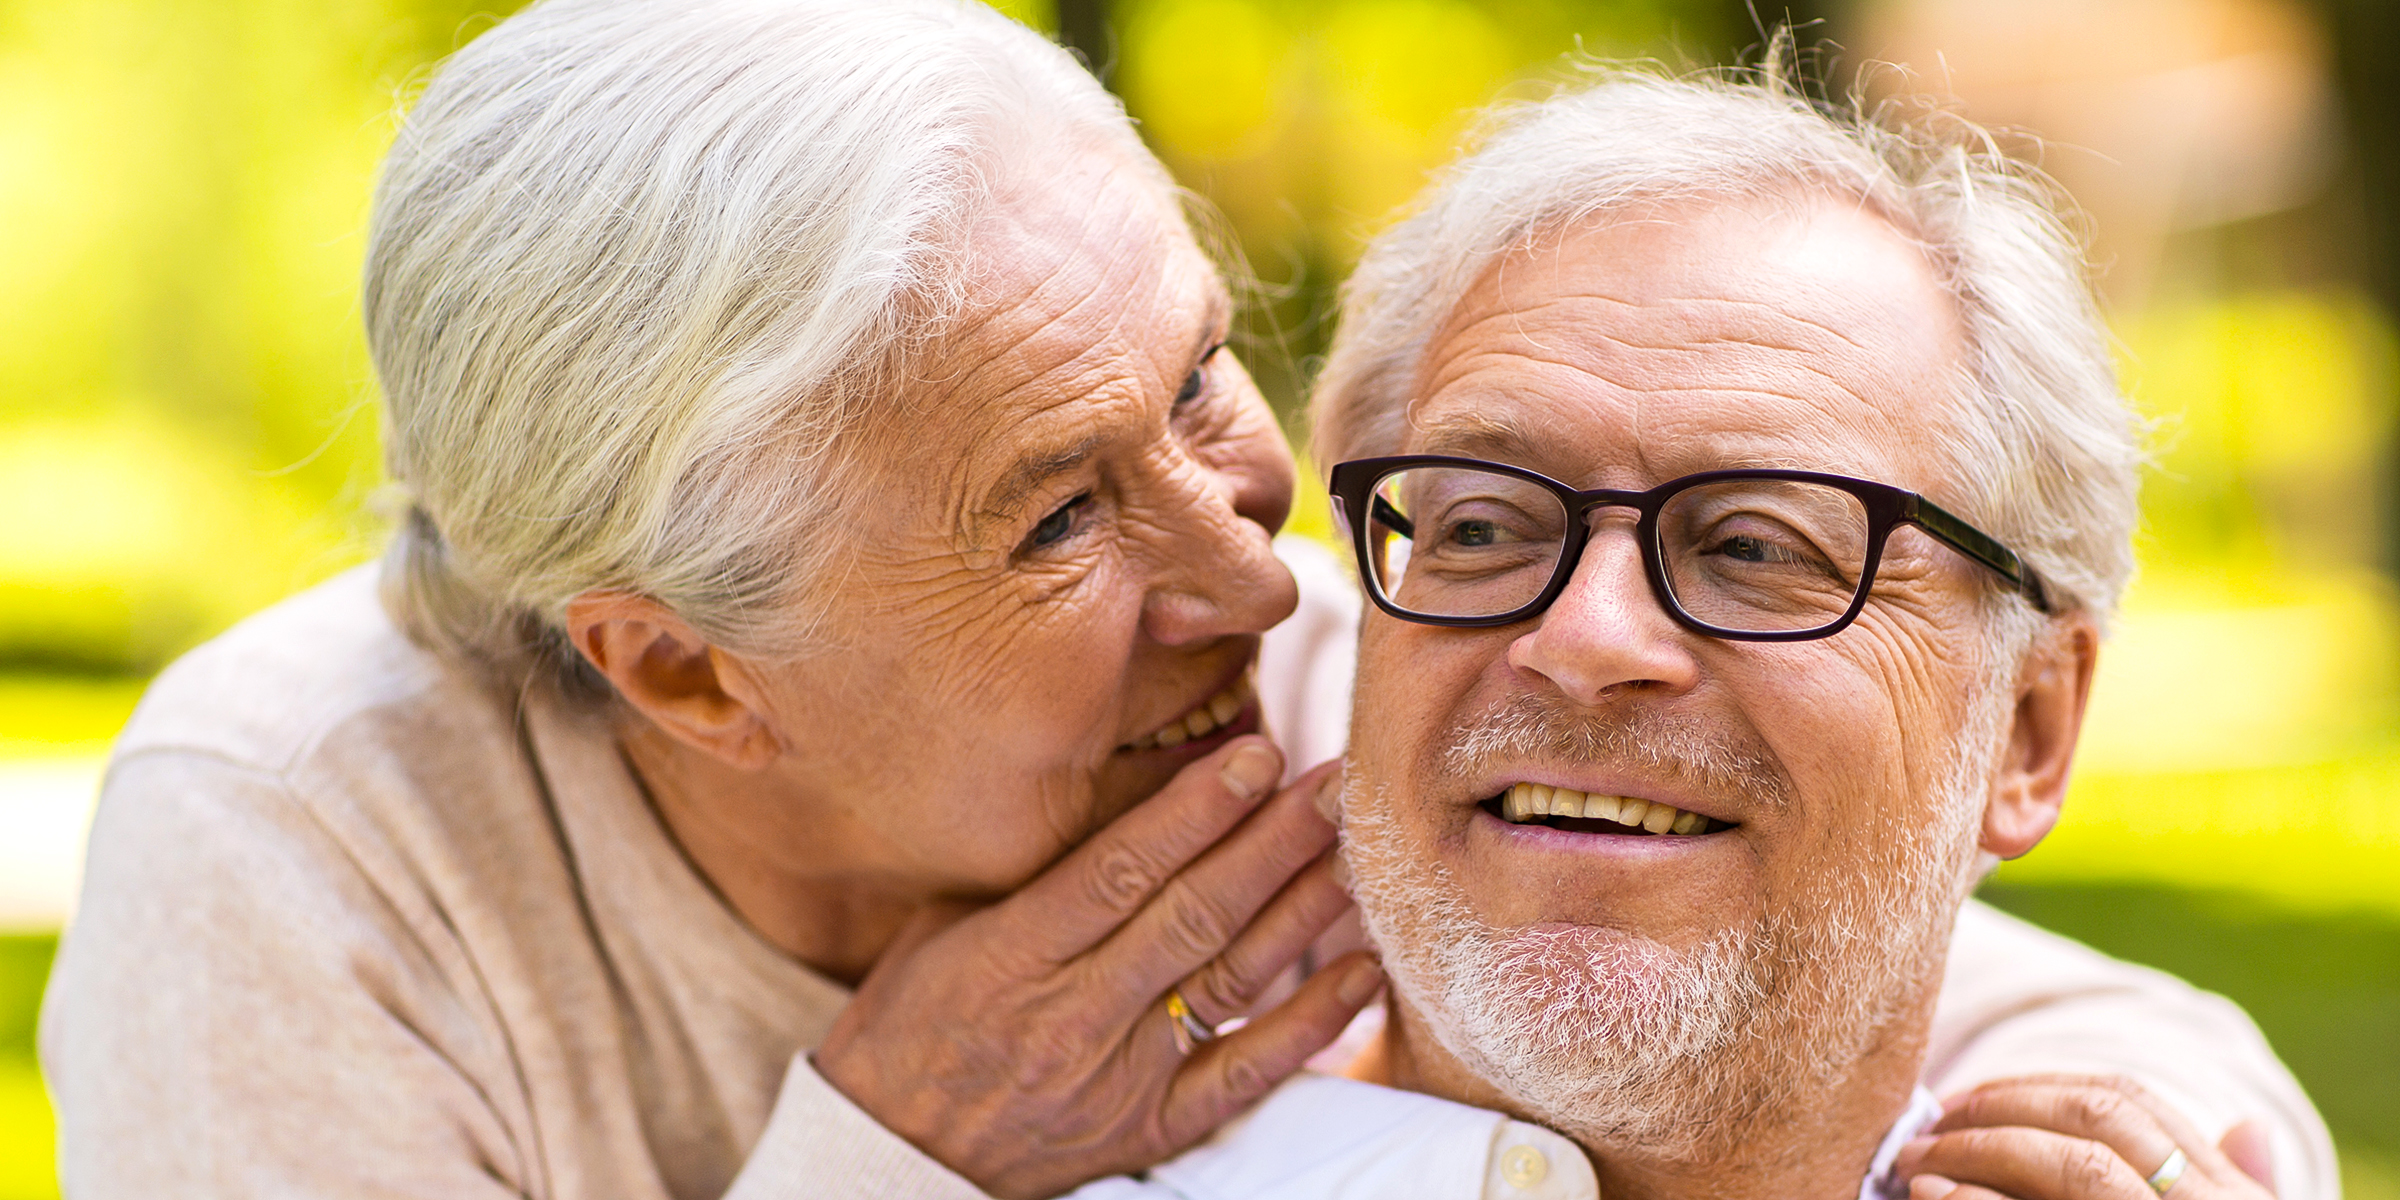 Une femme âgée qui chuchote à son mari | Source : Shutterstock